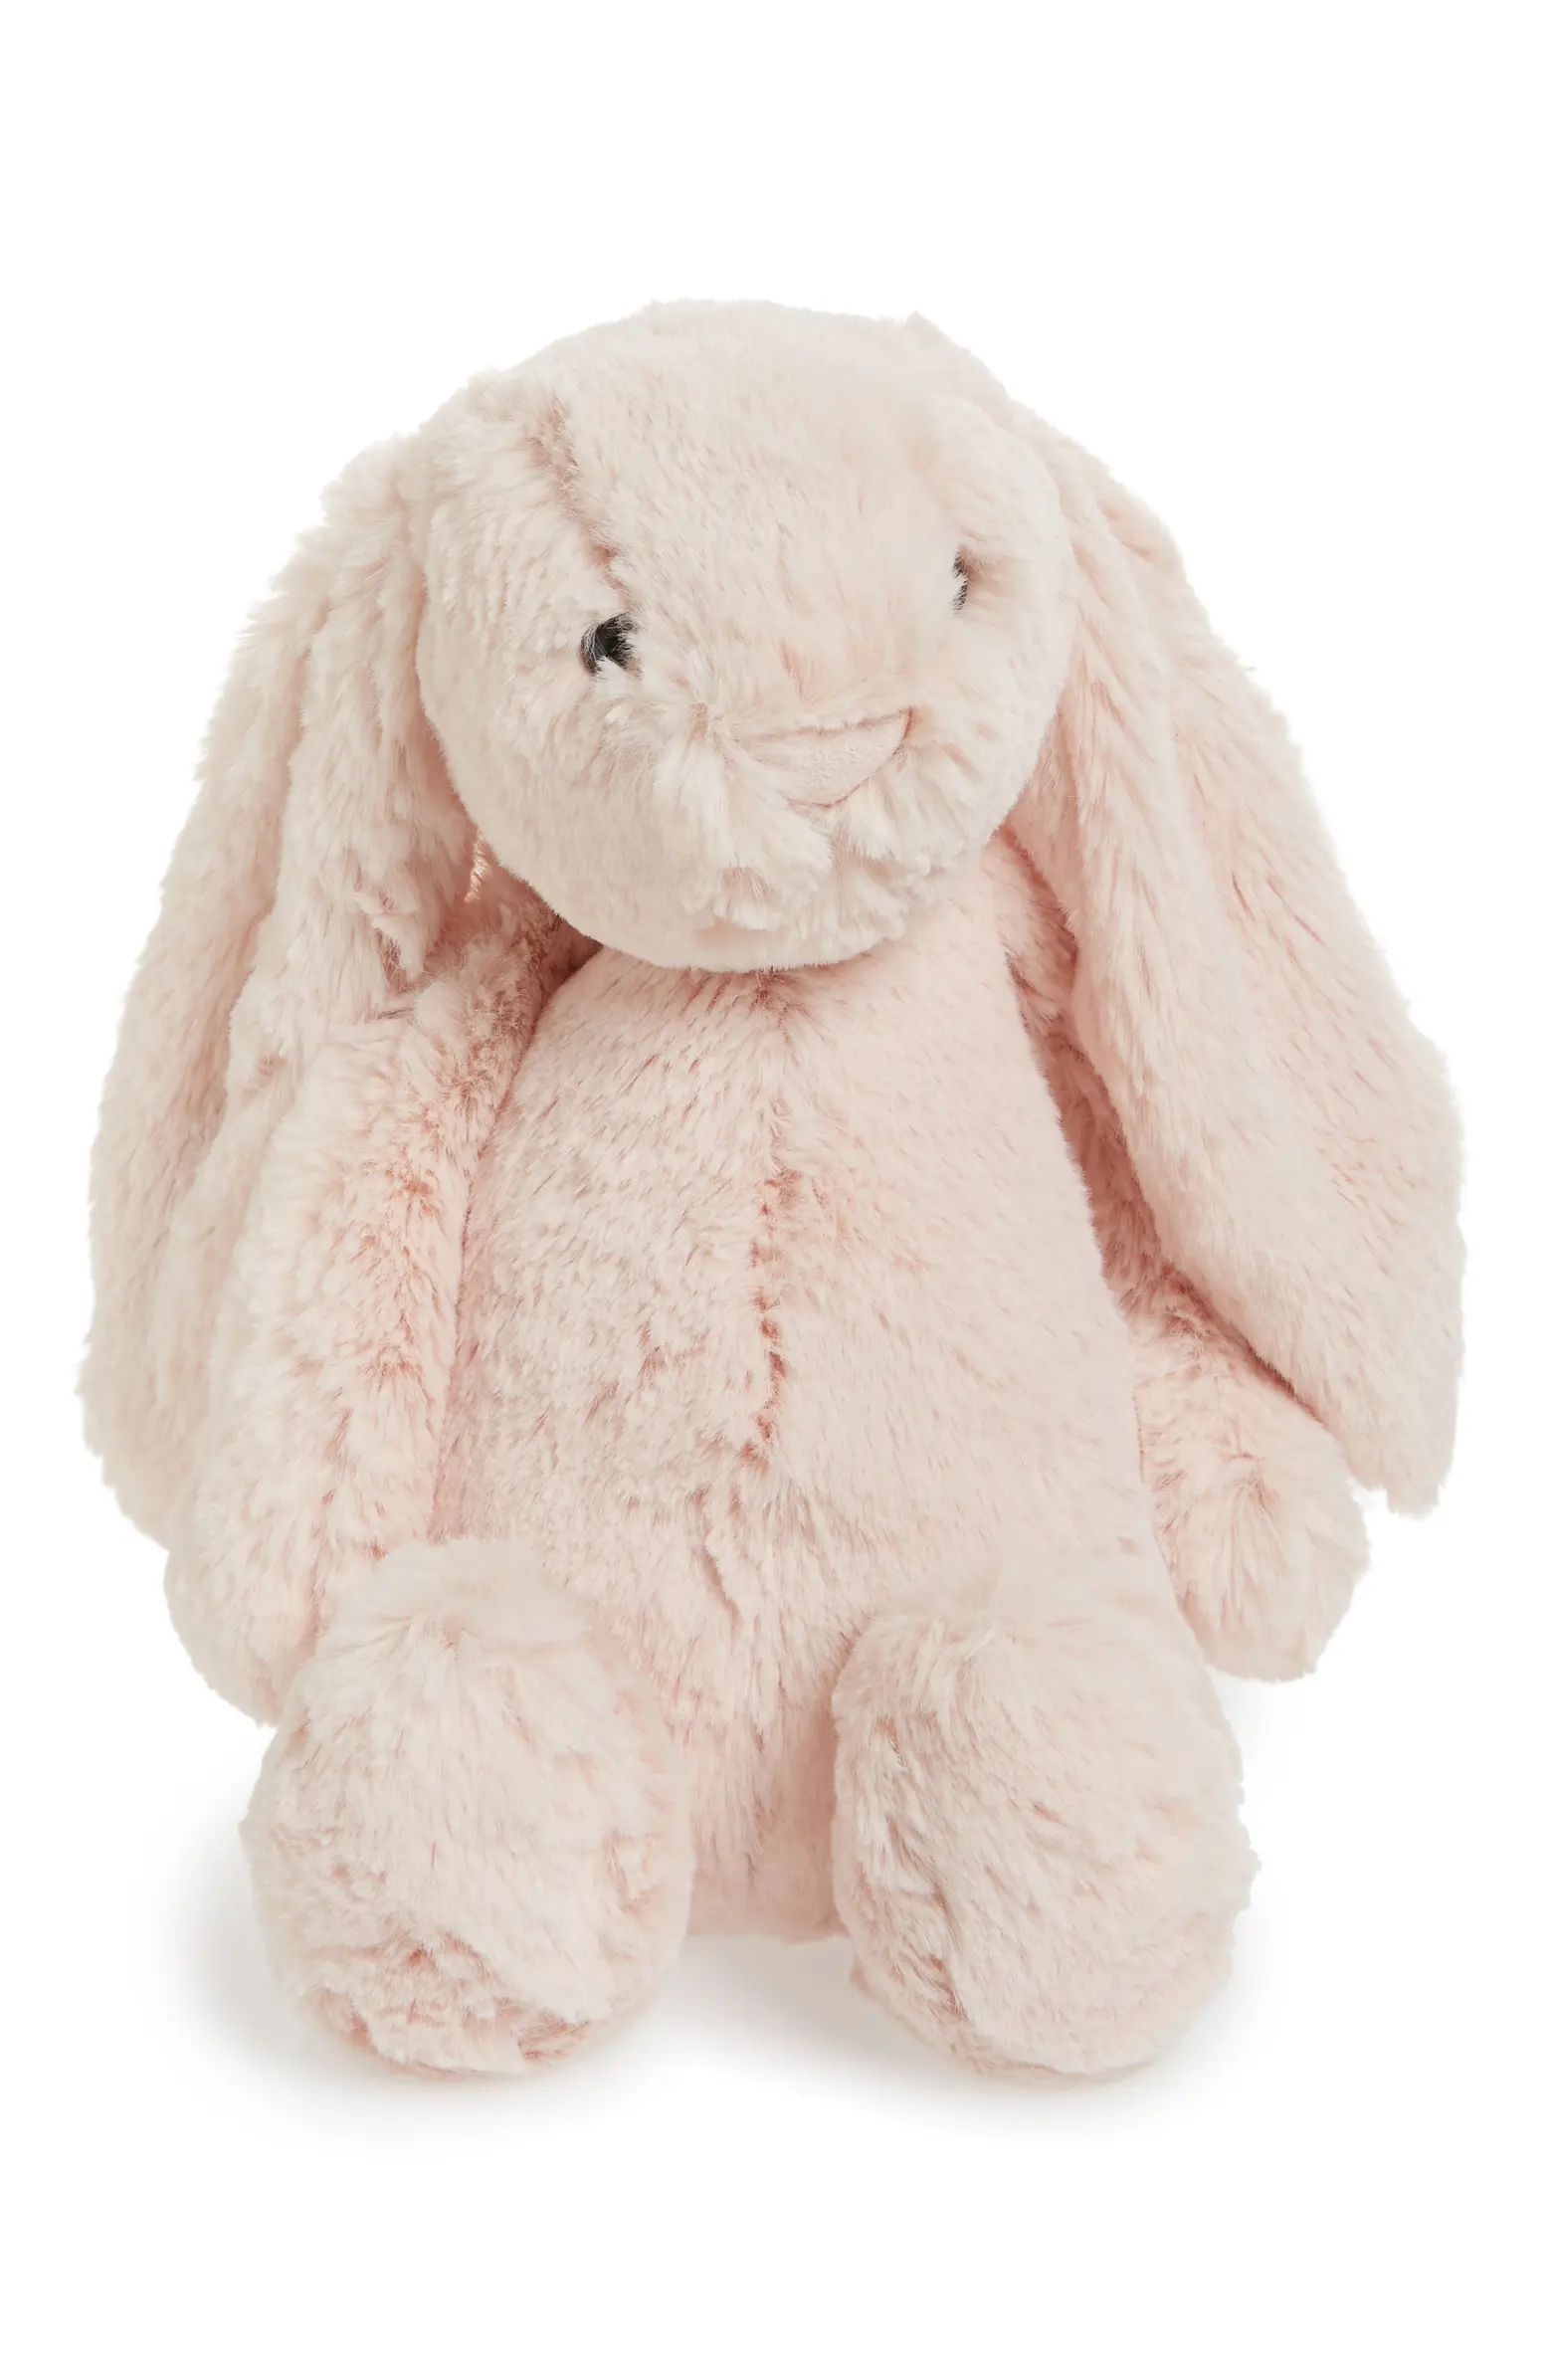 Medium Bashful Bunny Stuffed Animal | Nordstrom